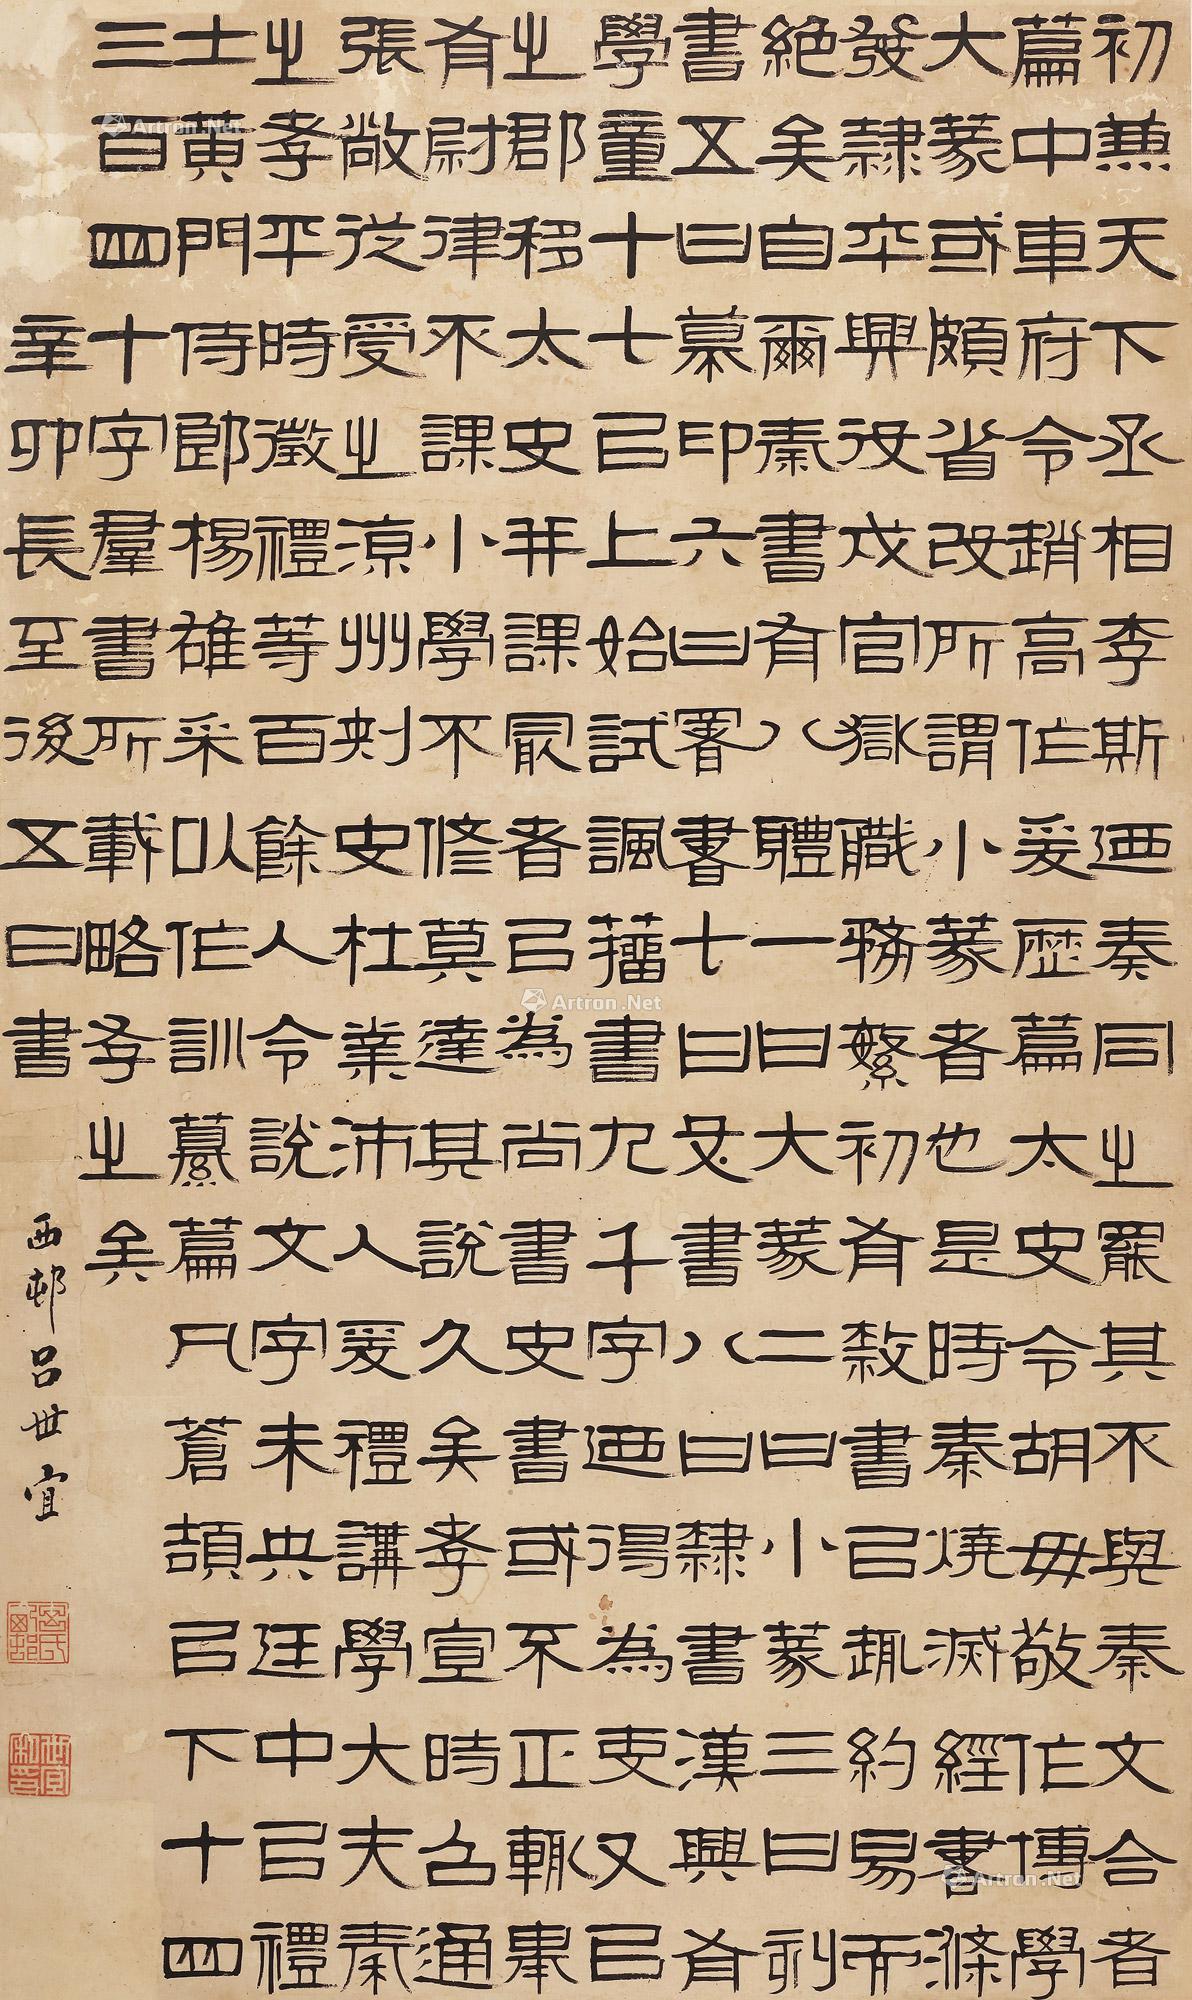 吕世宜 1831年作 隶书《说文解字序》节选 立轴